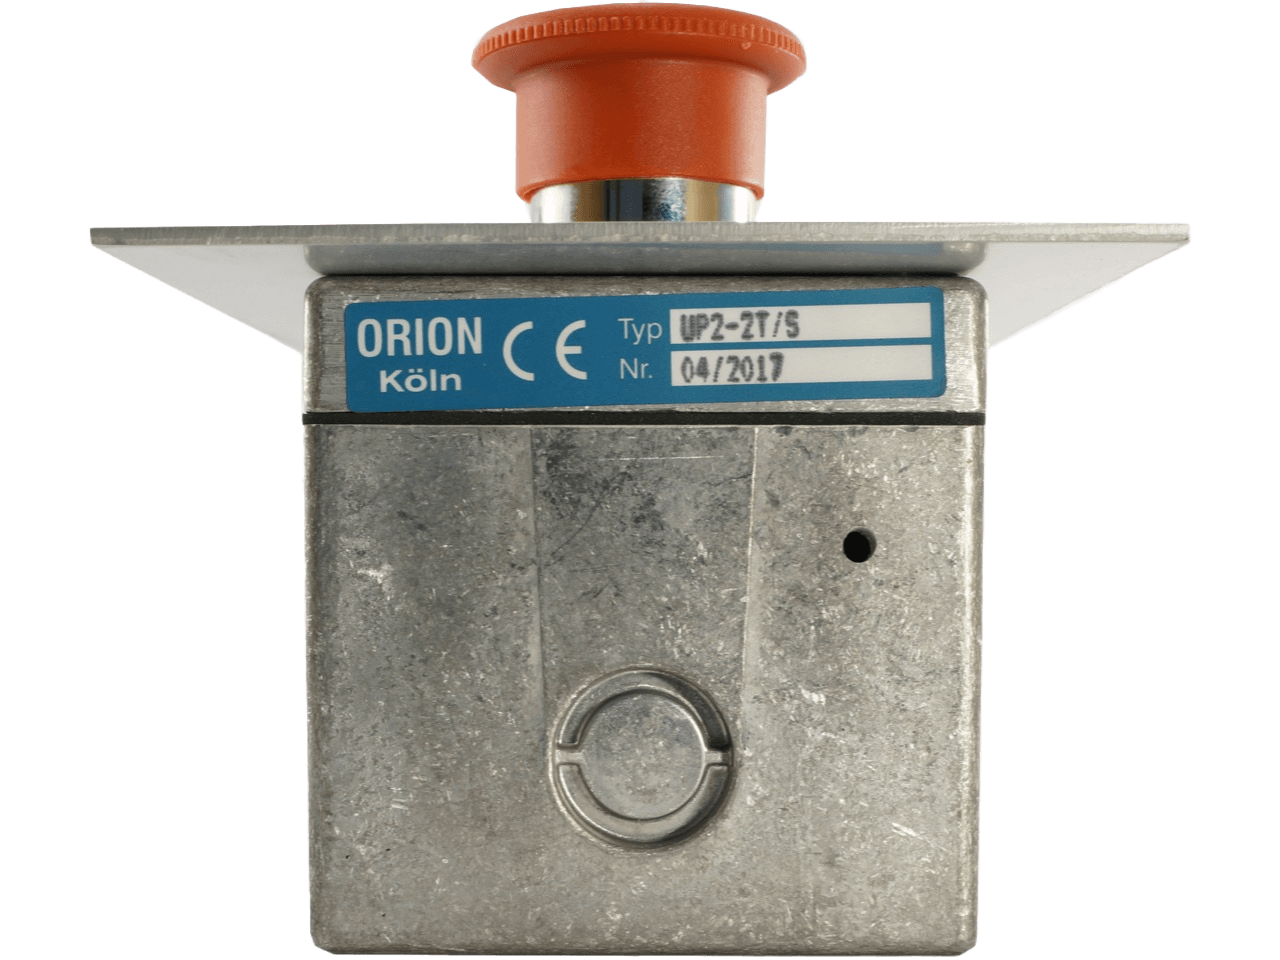 Orion UP 2-2T/S Schlüsseltaster Unterputz 2-seitig mit Not-AUS Schalter